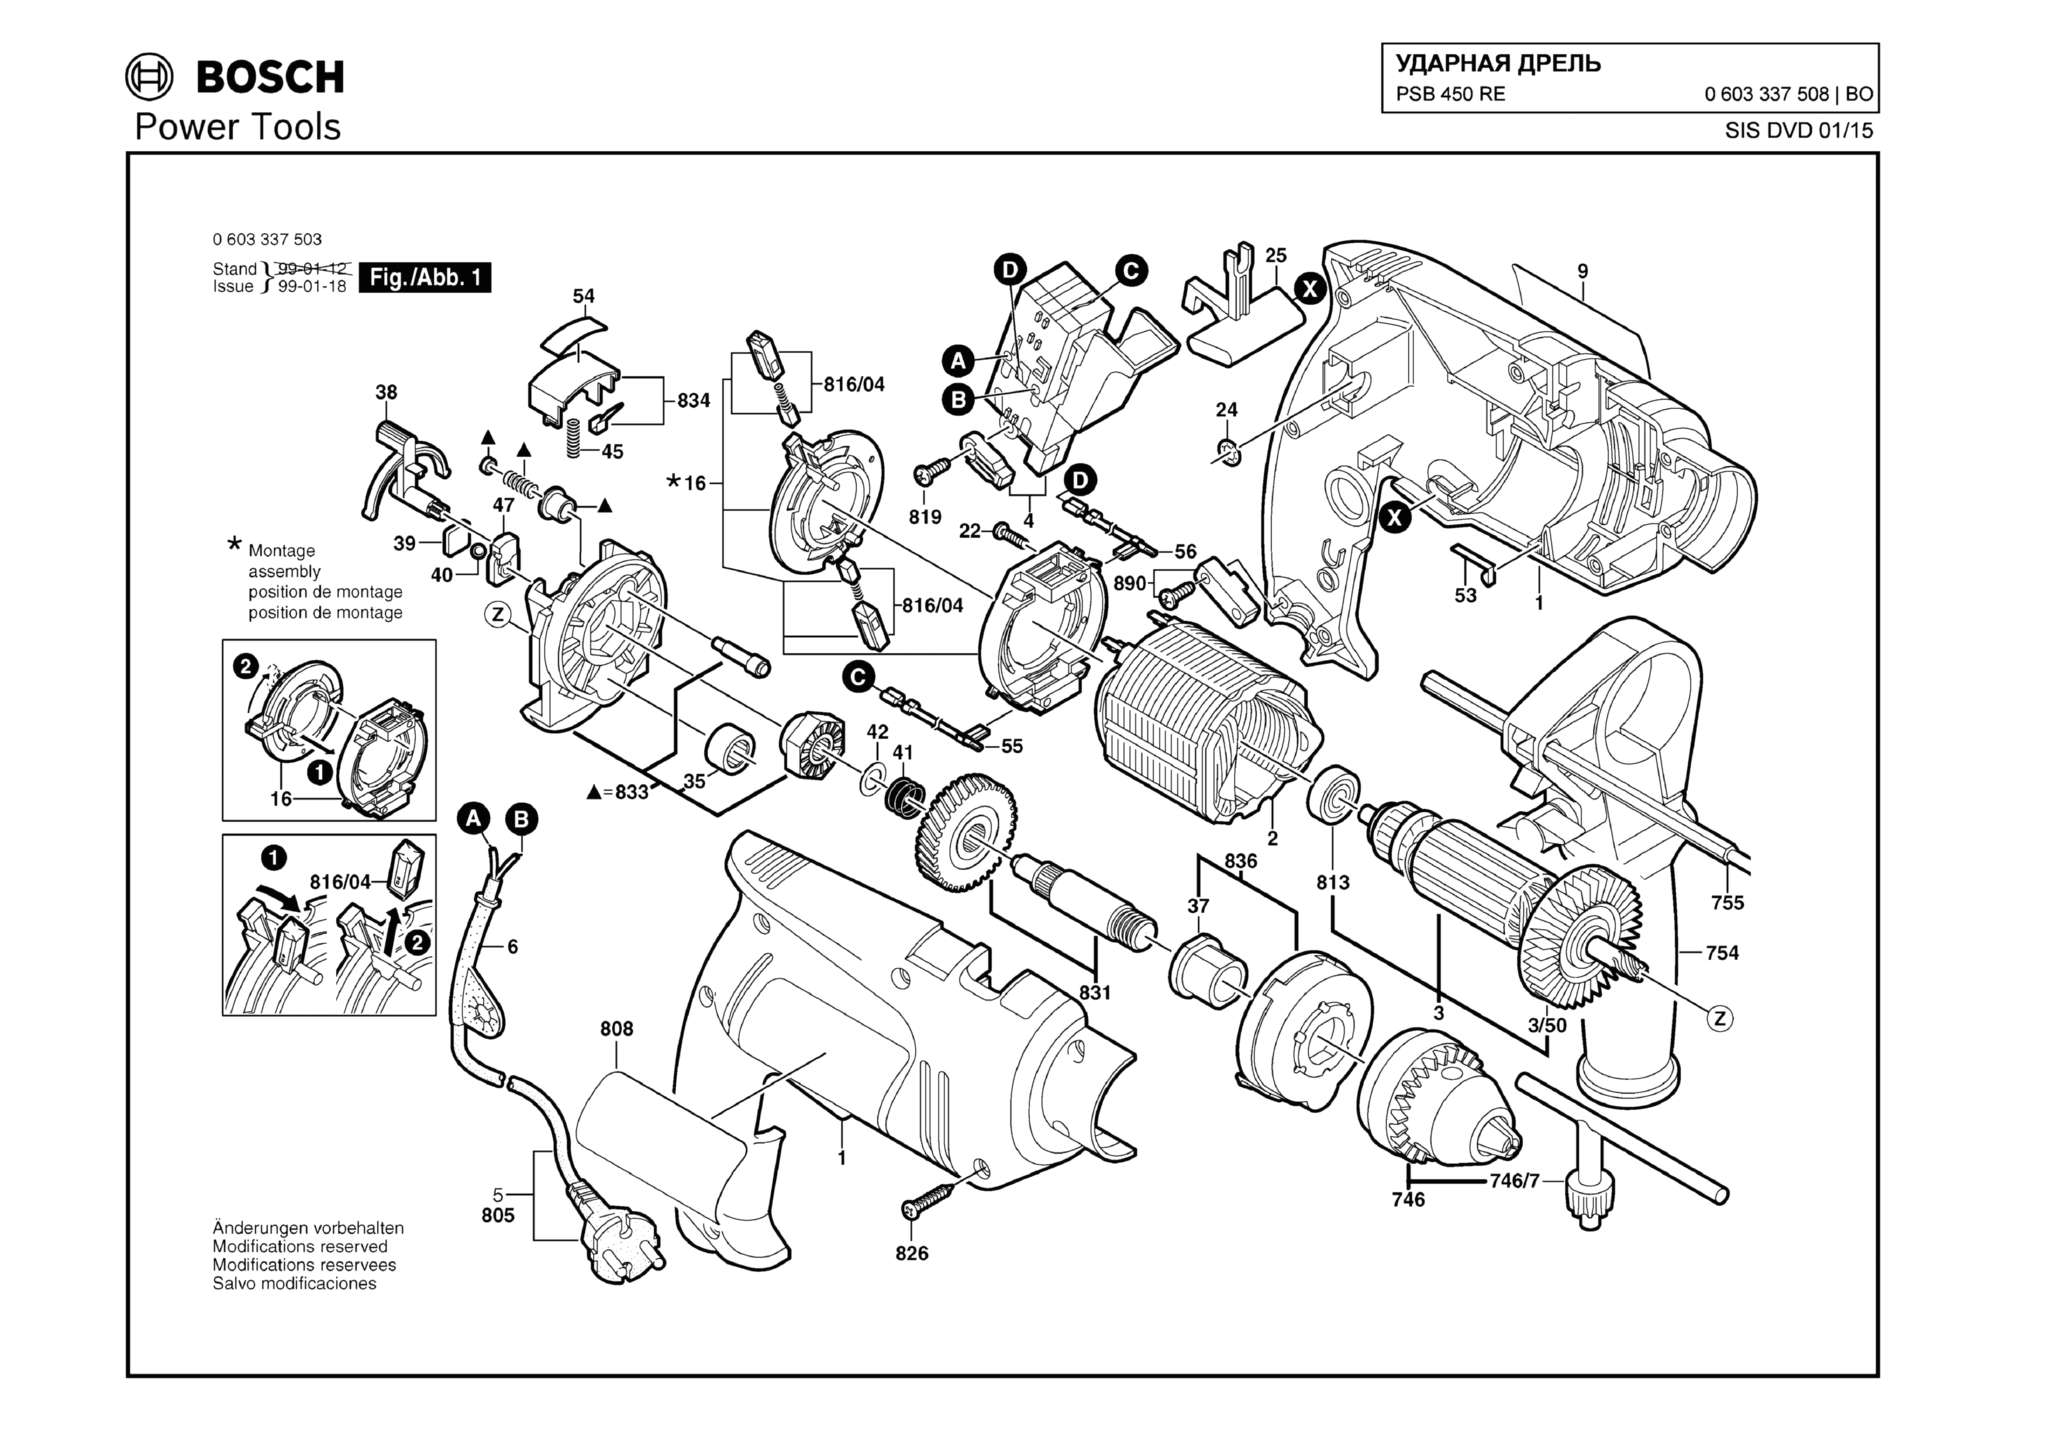 Запчасти, схема и деталировка Bosch PSB 450 RE (ТИП 0603337508)